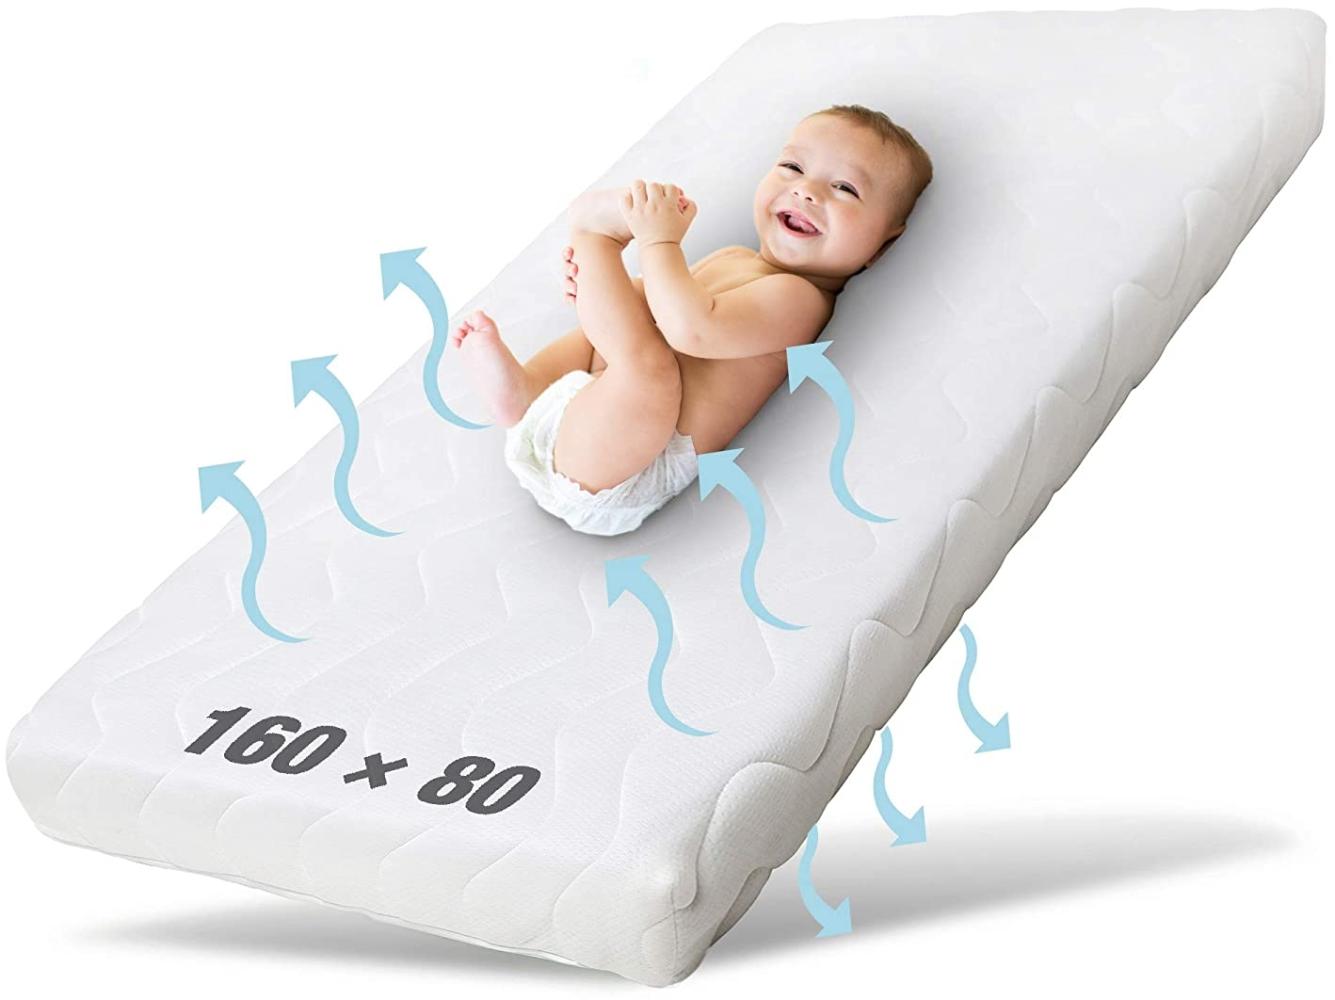 Ehrenkind® Kindermatratze Pur | Baby Matratze 80x160 | Babymatratze 80x160 aus hochwertigem Schaum und Hygienebezug Bild 1